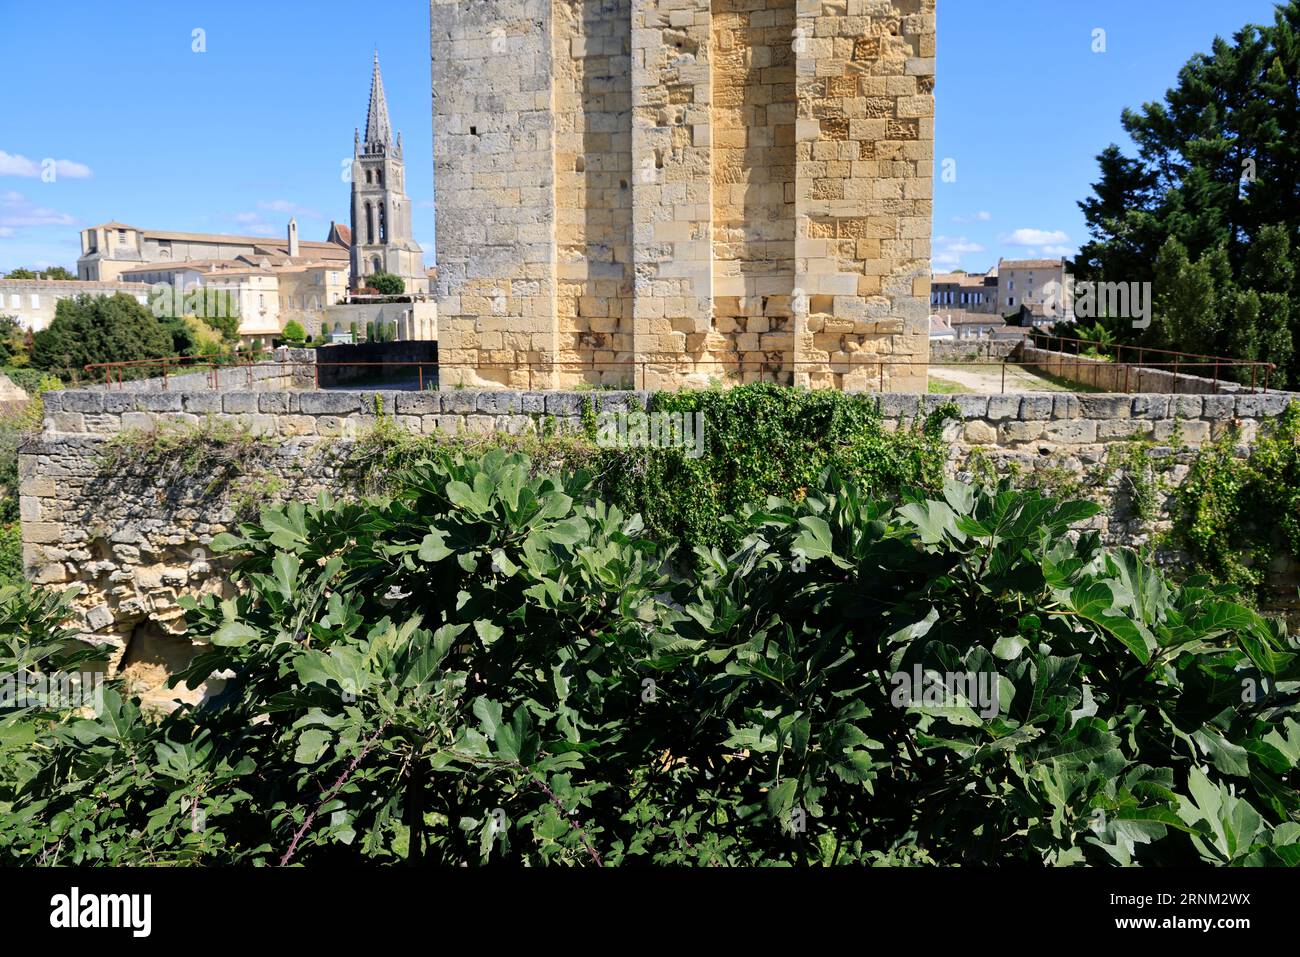 Saint-Emilion. Figuiers et figues dans le Village de Saint-Emilion classé parmi les plus beaux Villages de France. Saint-Emilion, Gironde, Frankreich, Eur Stockfoto